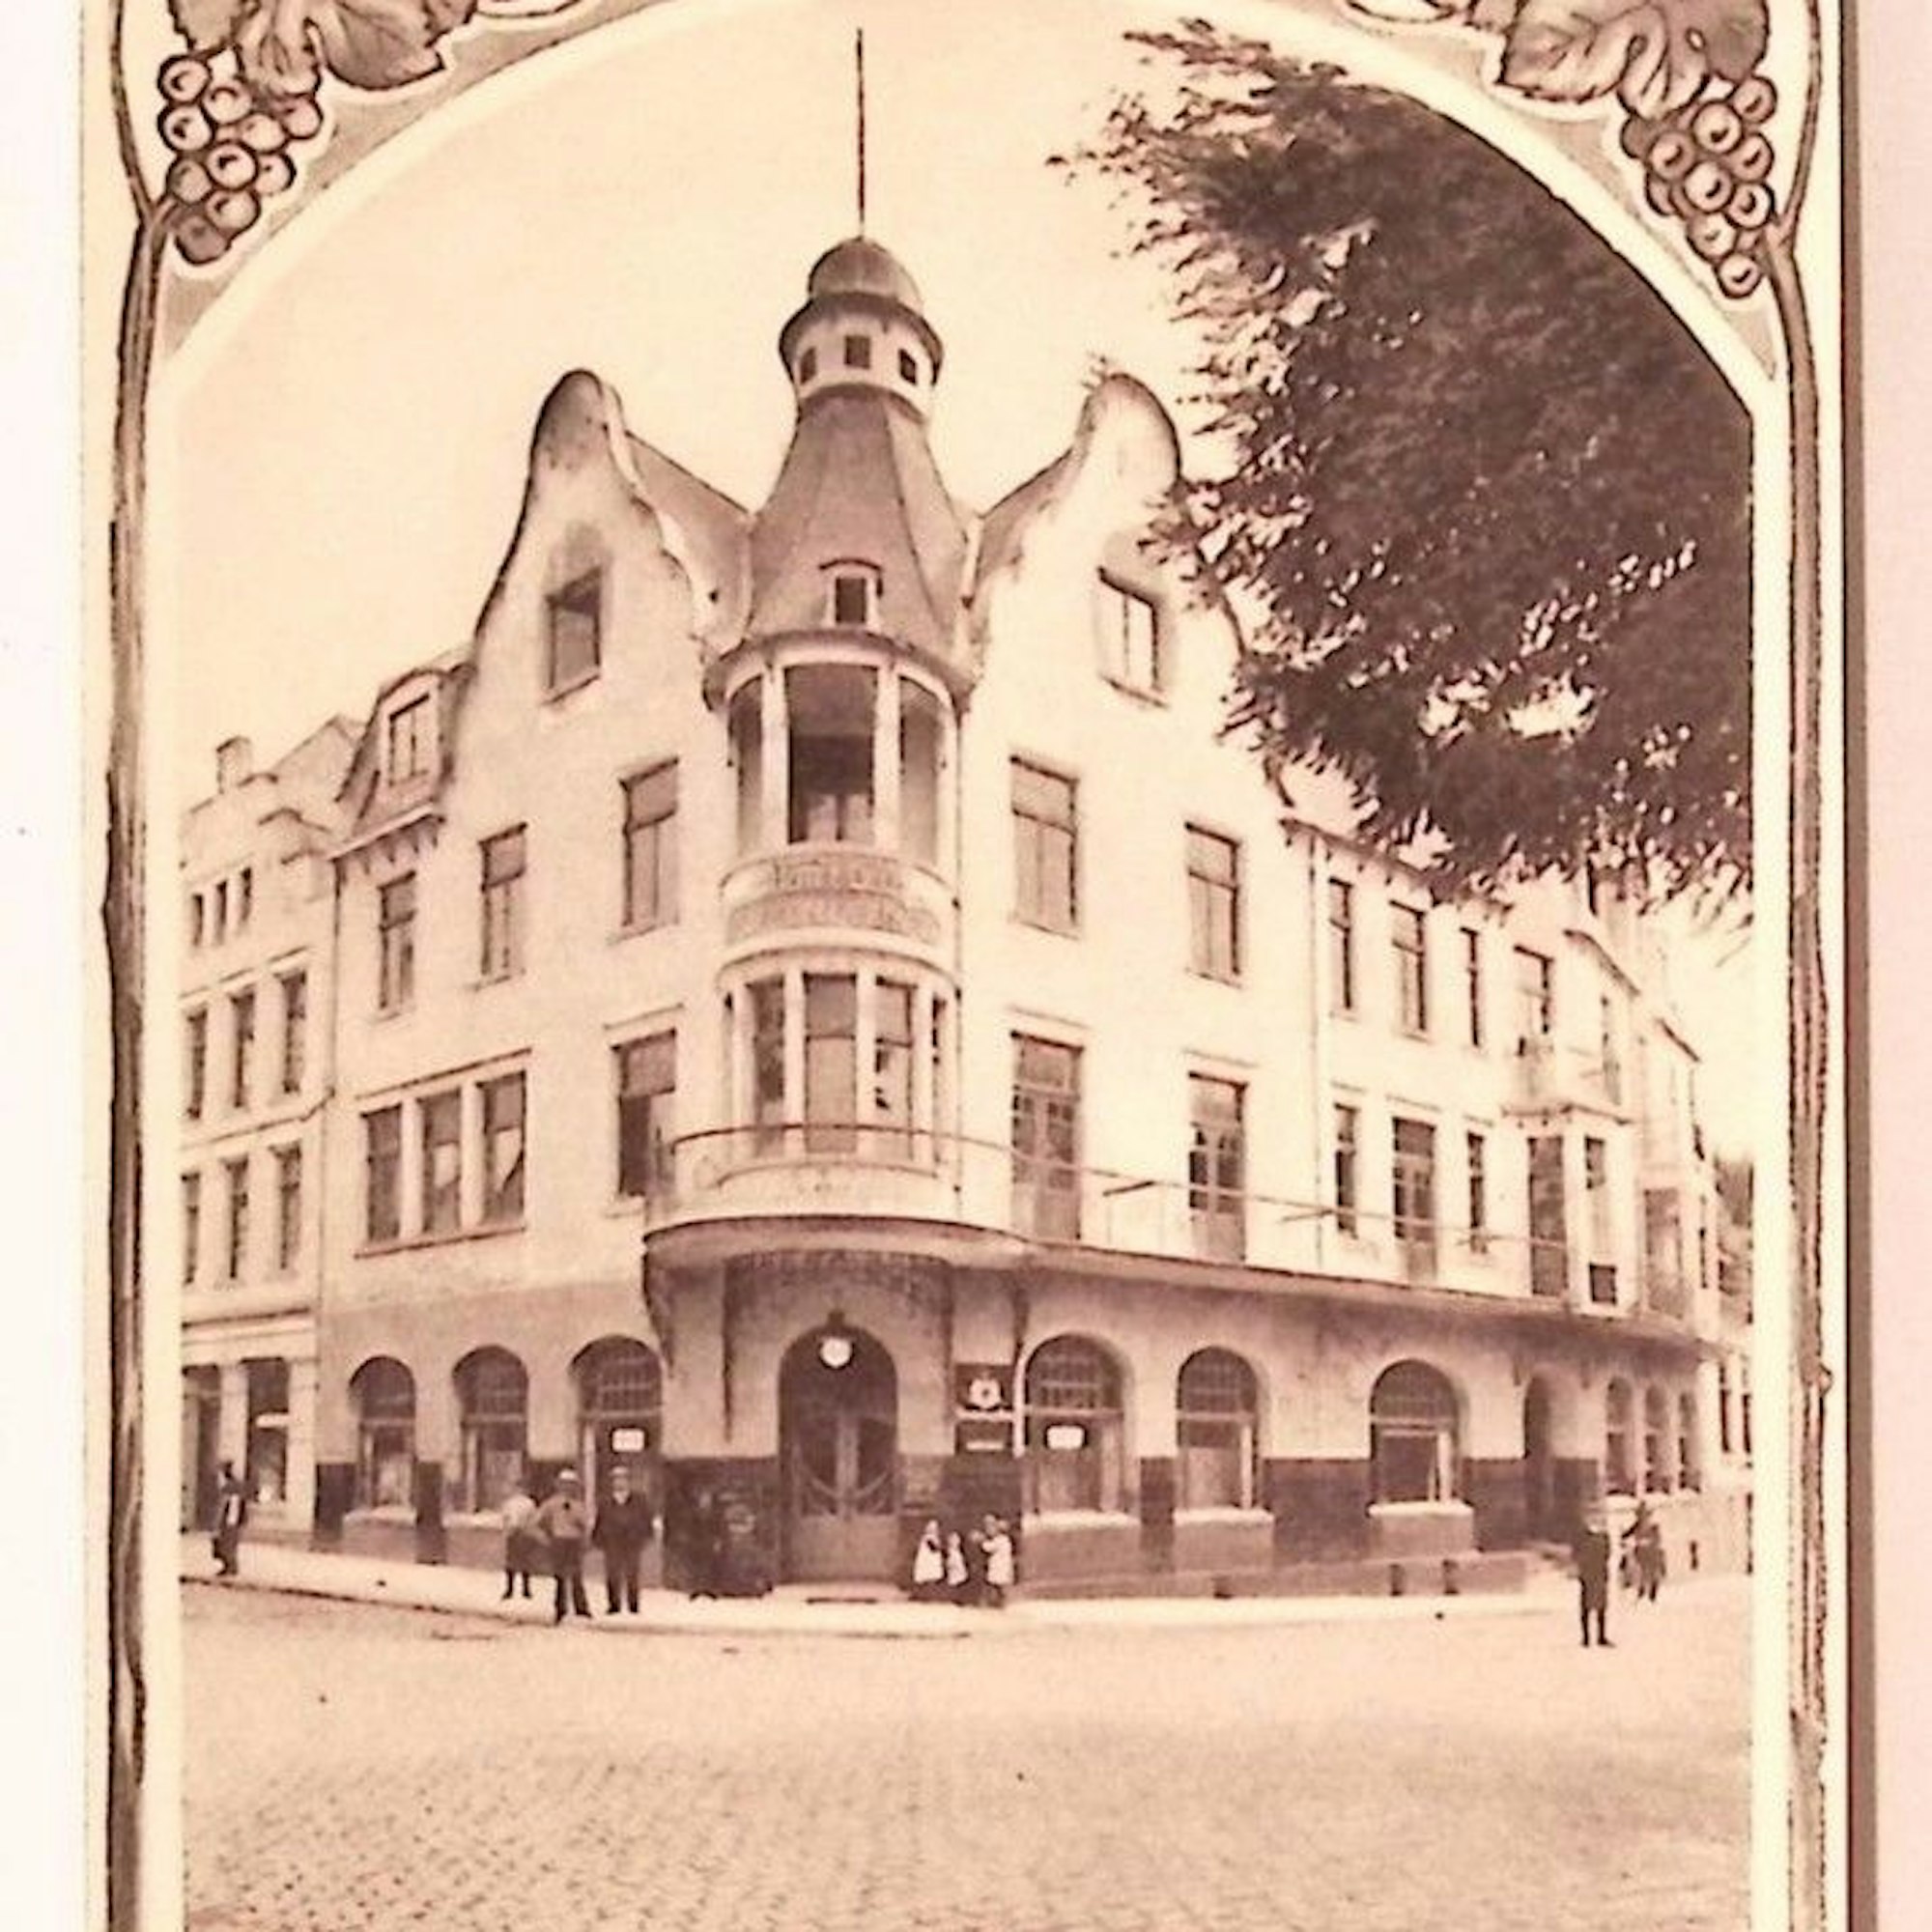 Historisches Bild von einem Hotel.